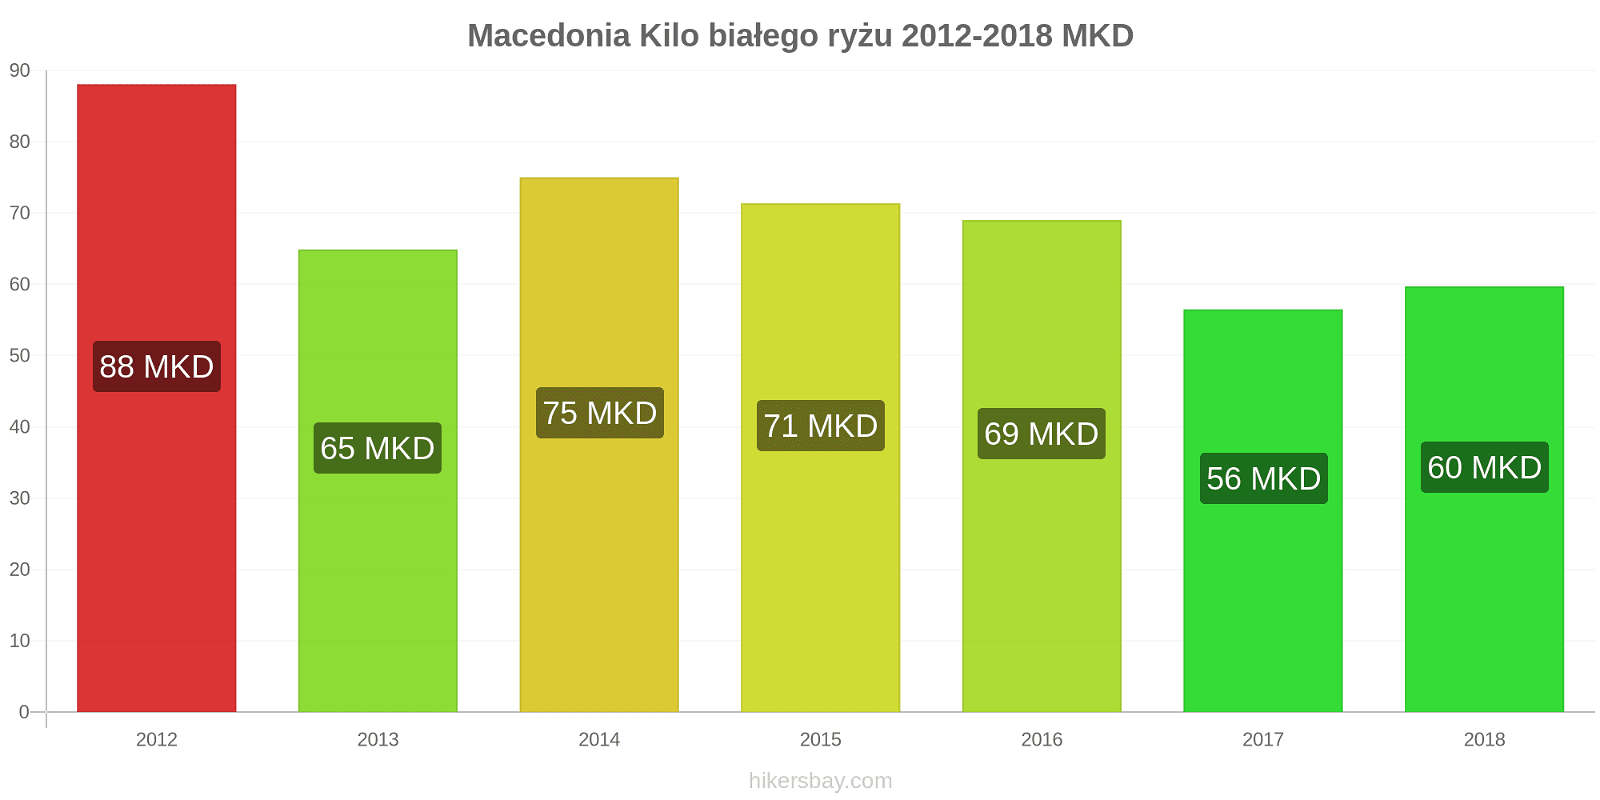 Macedonia zmiany cen Kilo białego ryżu hikersbay.com